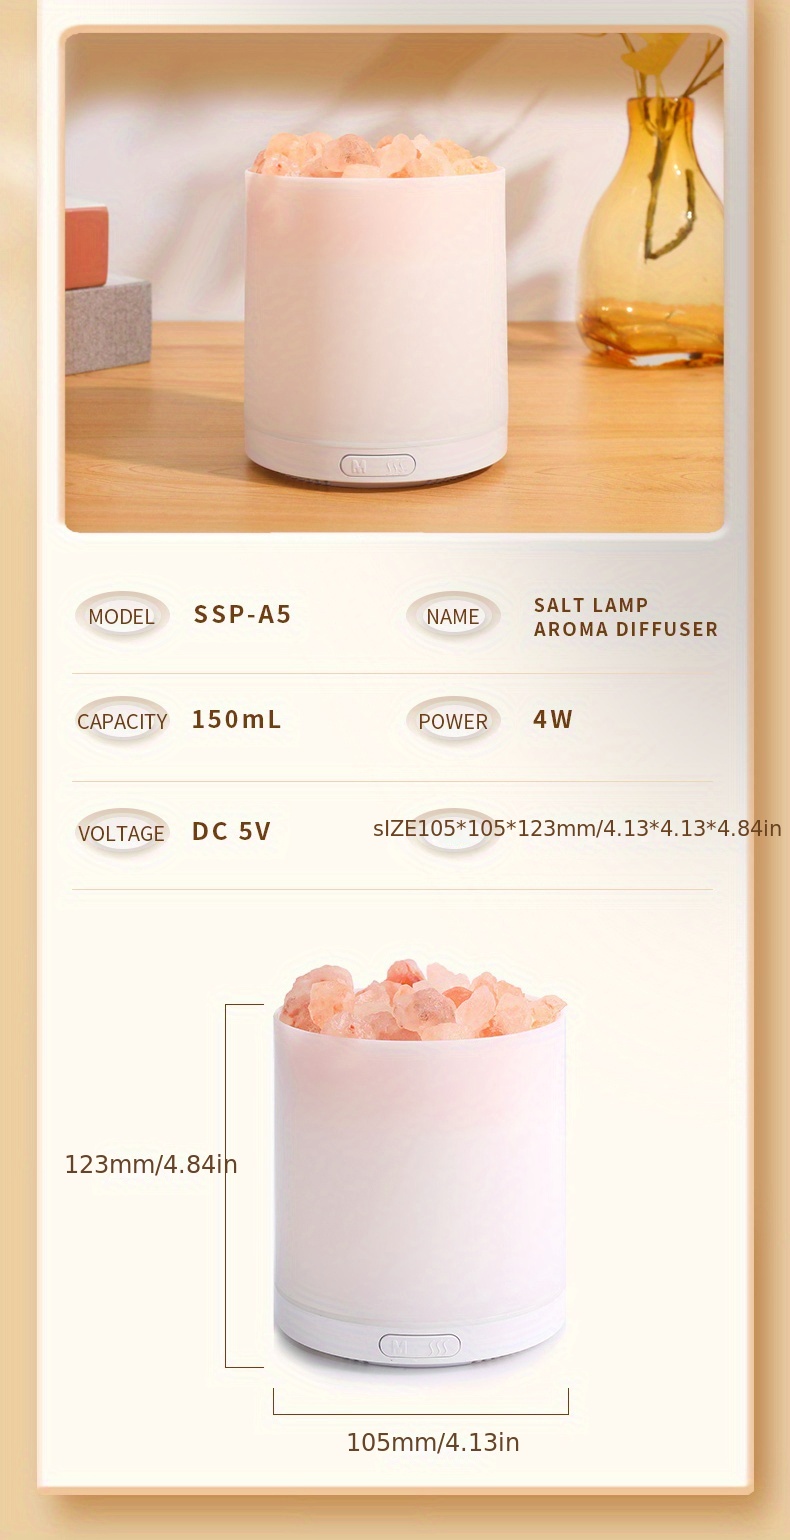 Portable Usb Air Humidifier Crystal Salt Stone Aroma Oil Diffuser